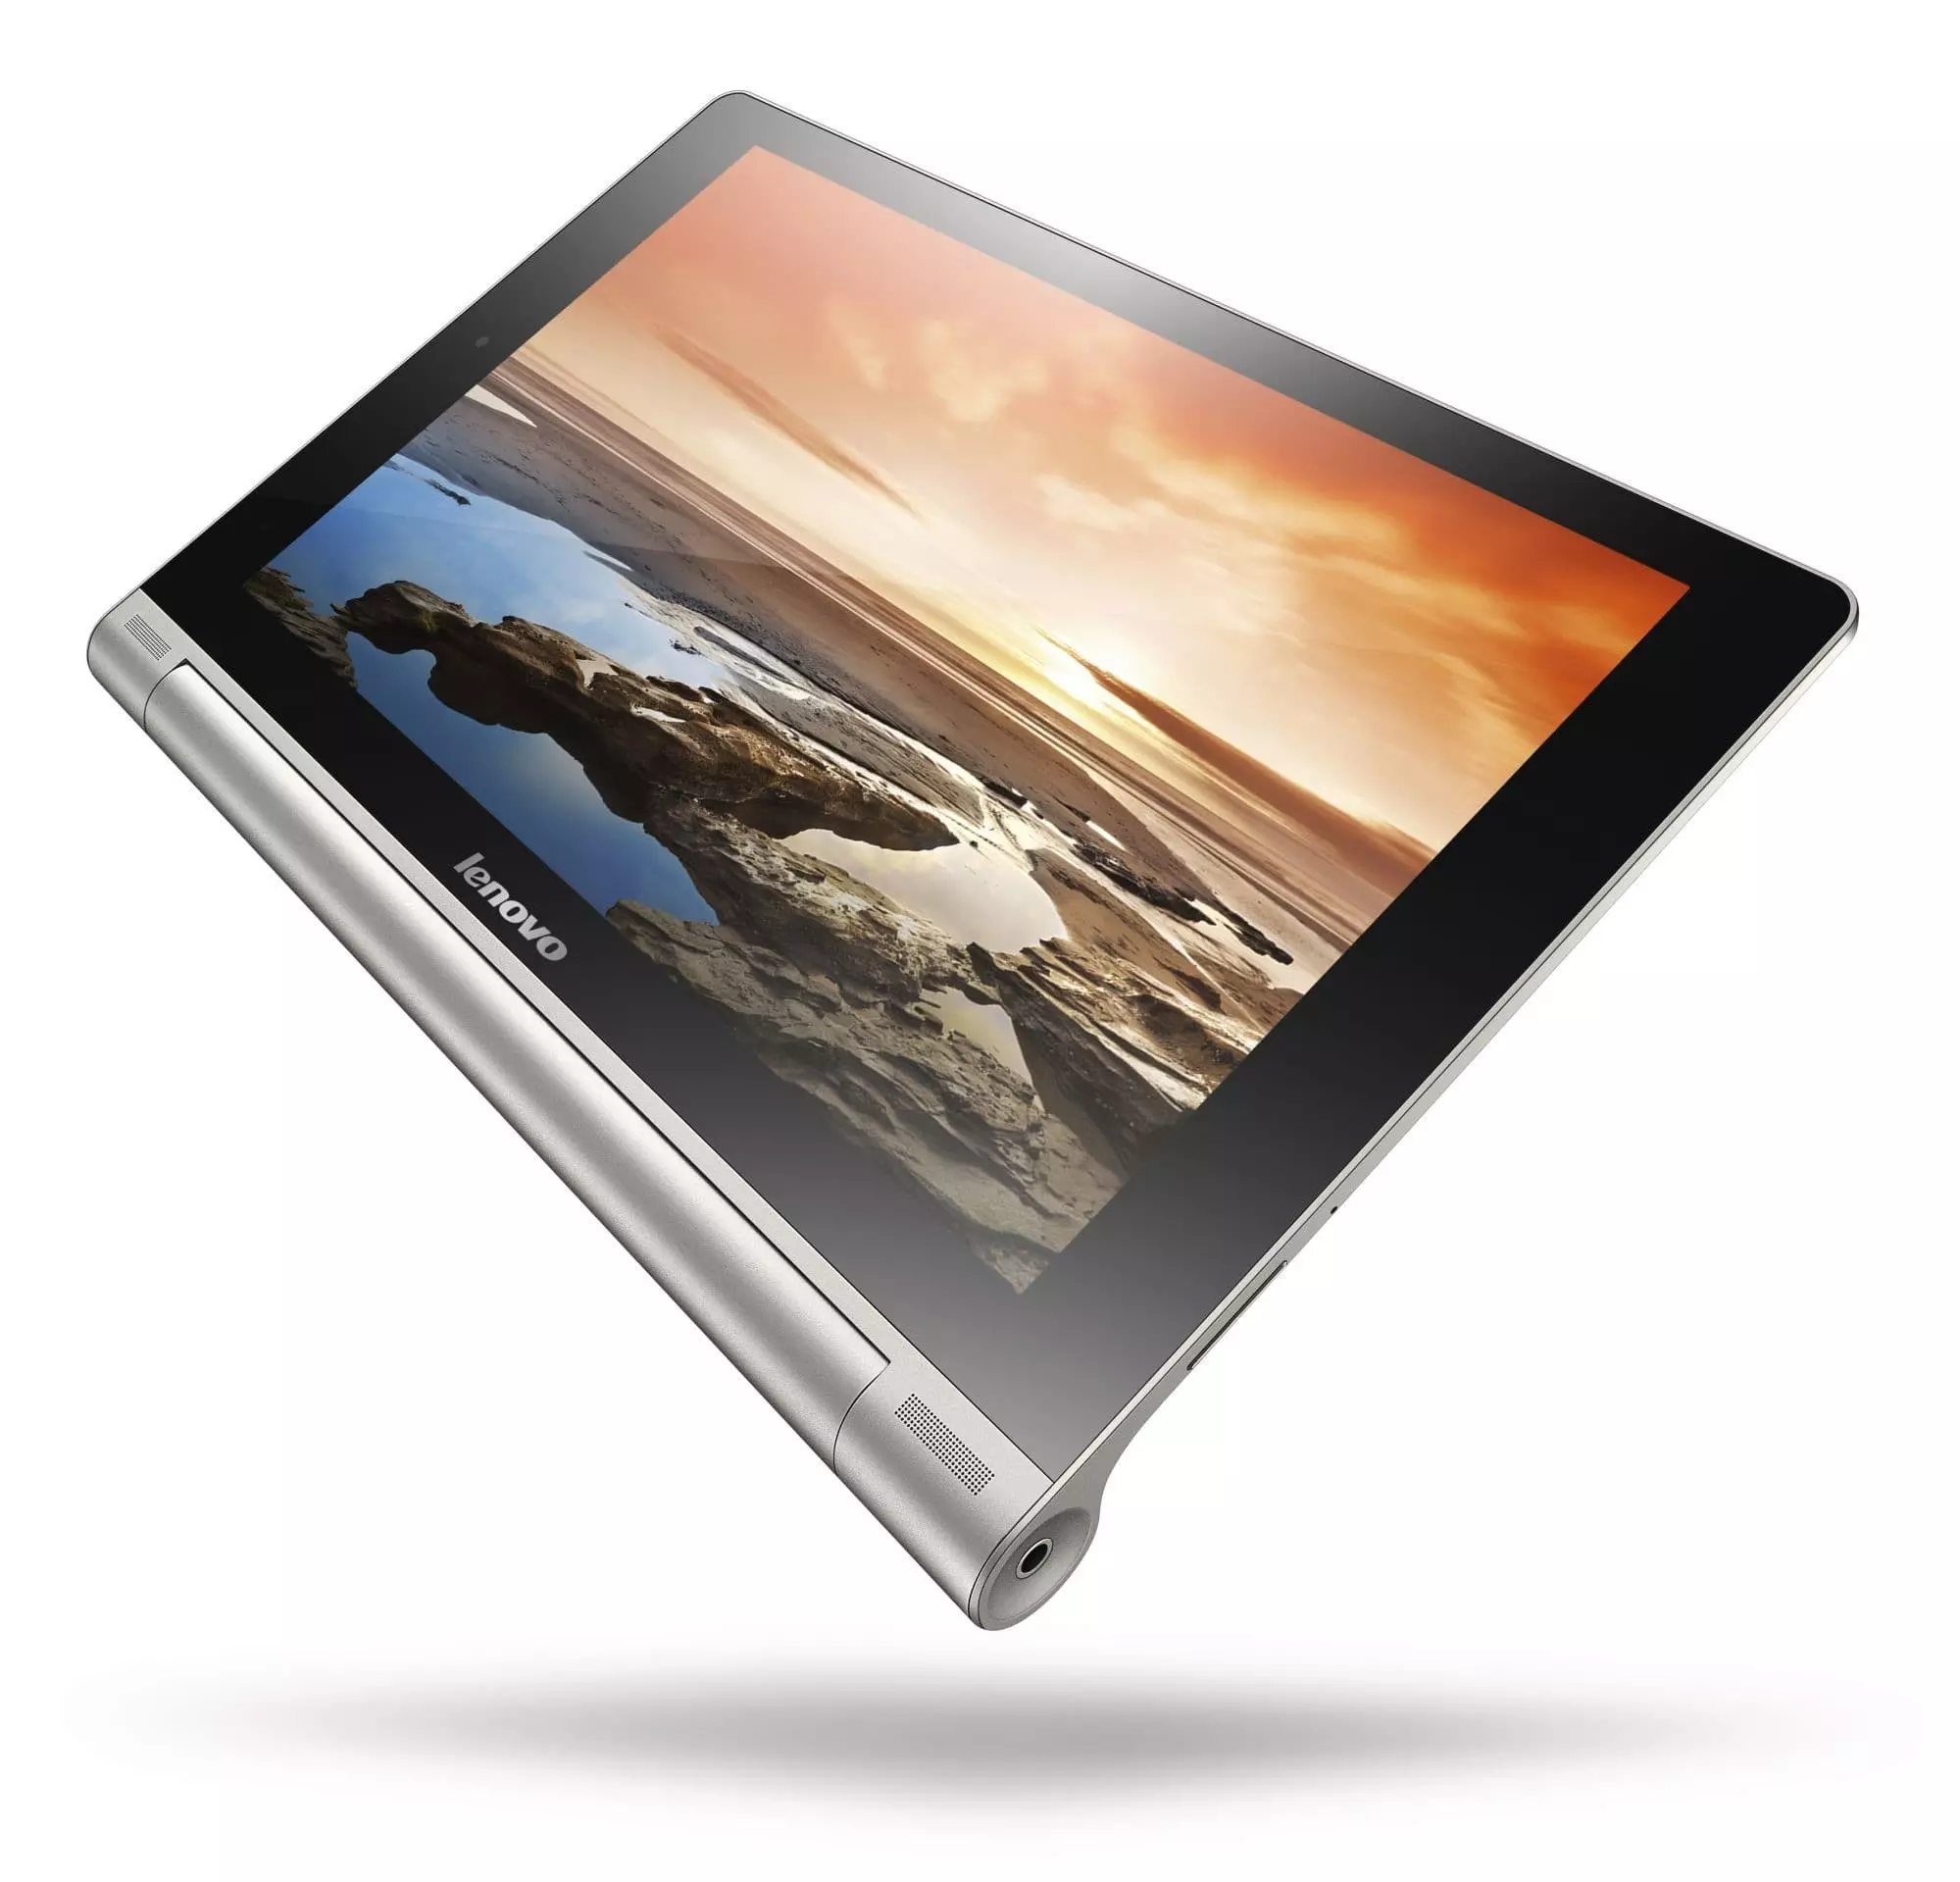 Lenovo Yoga Tablet 10 B8000